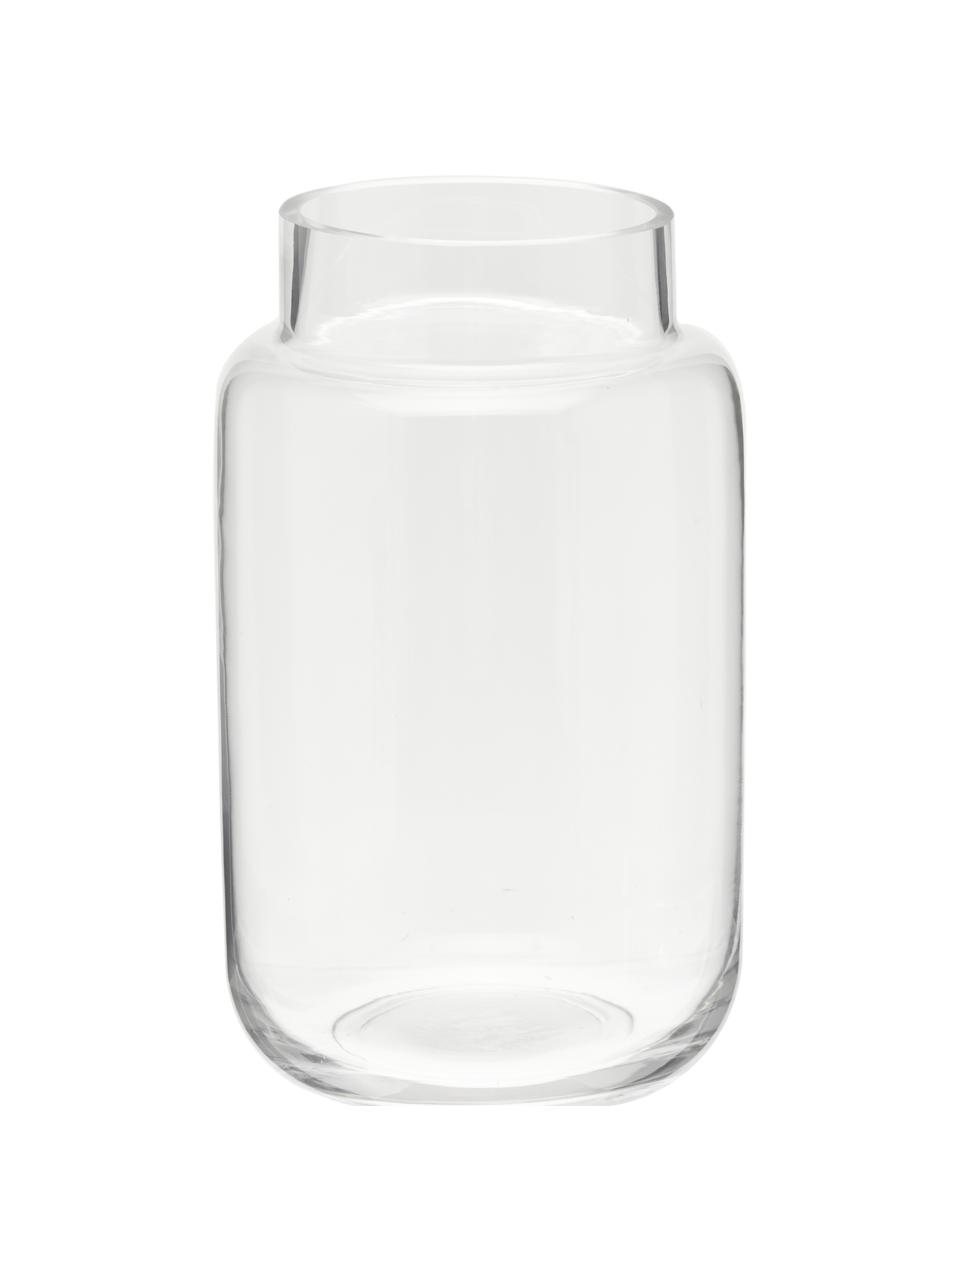 Große Glas-Vase Lasse, transparent, Glas, Transparent, Ø 13 x H 22 cm